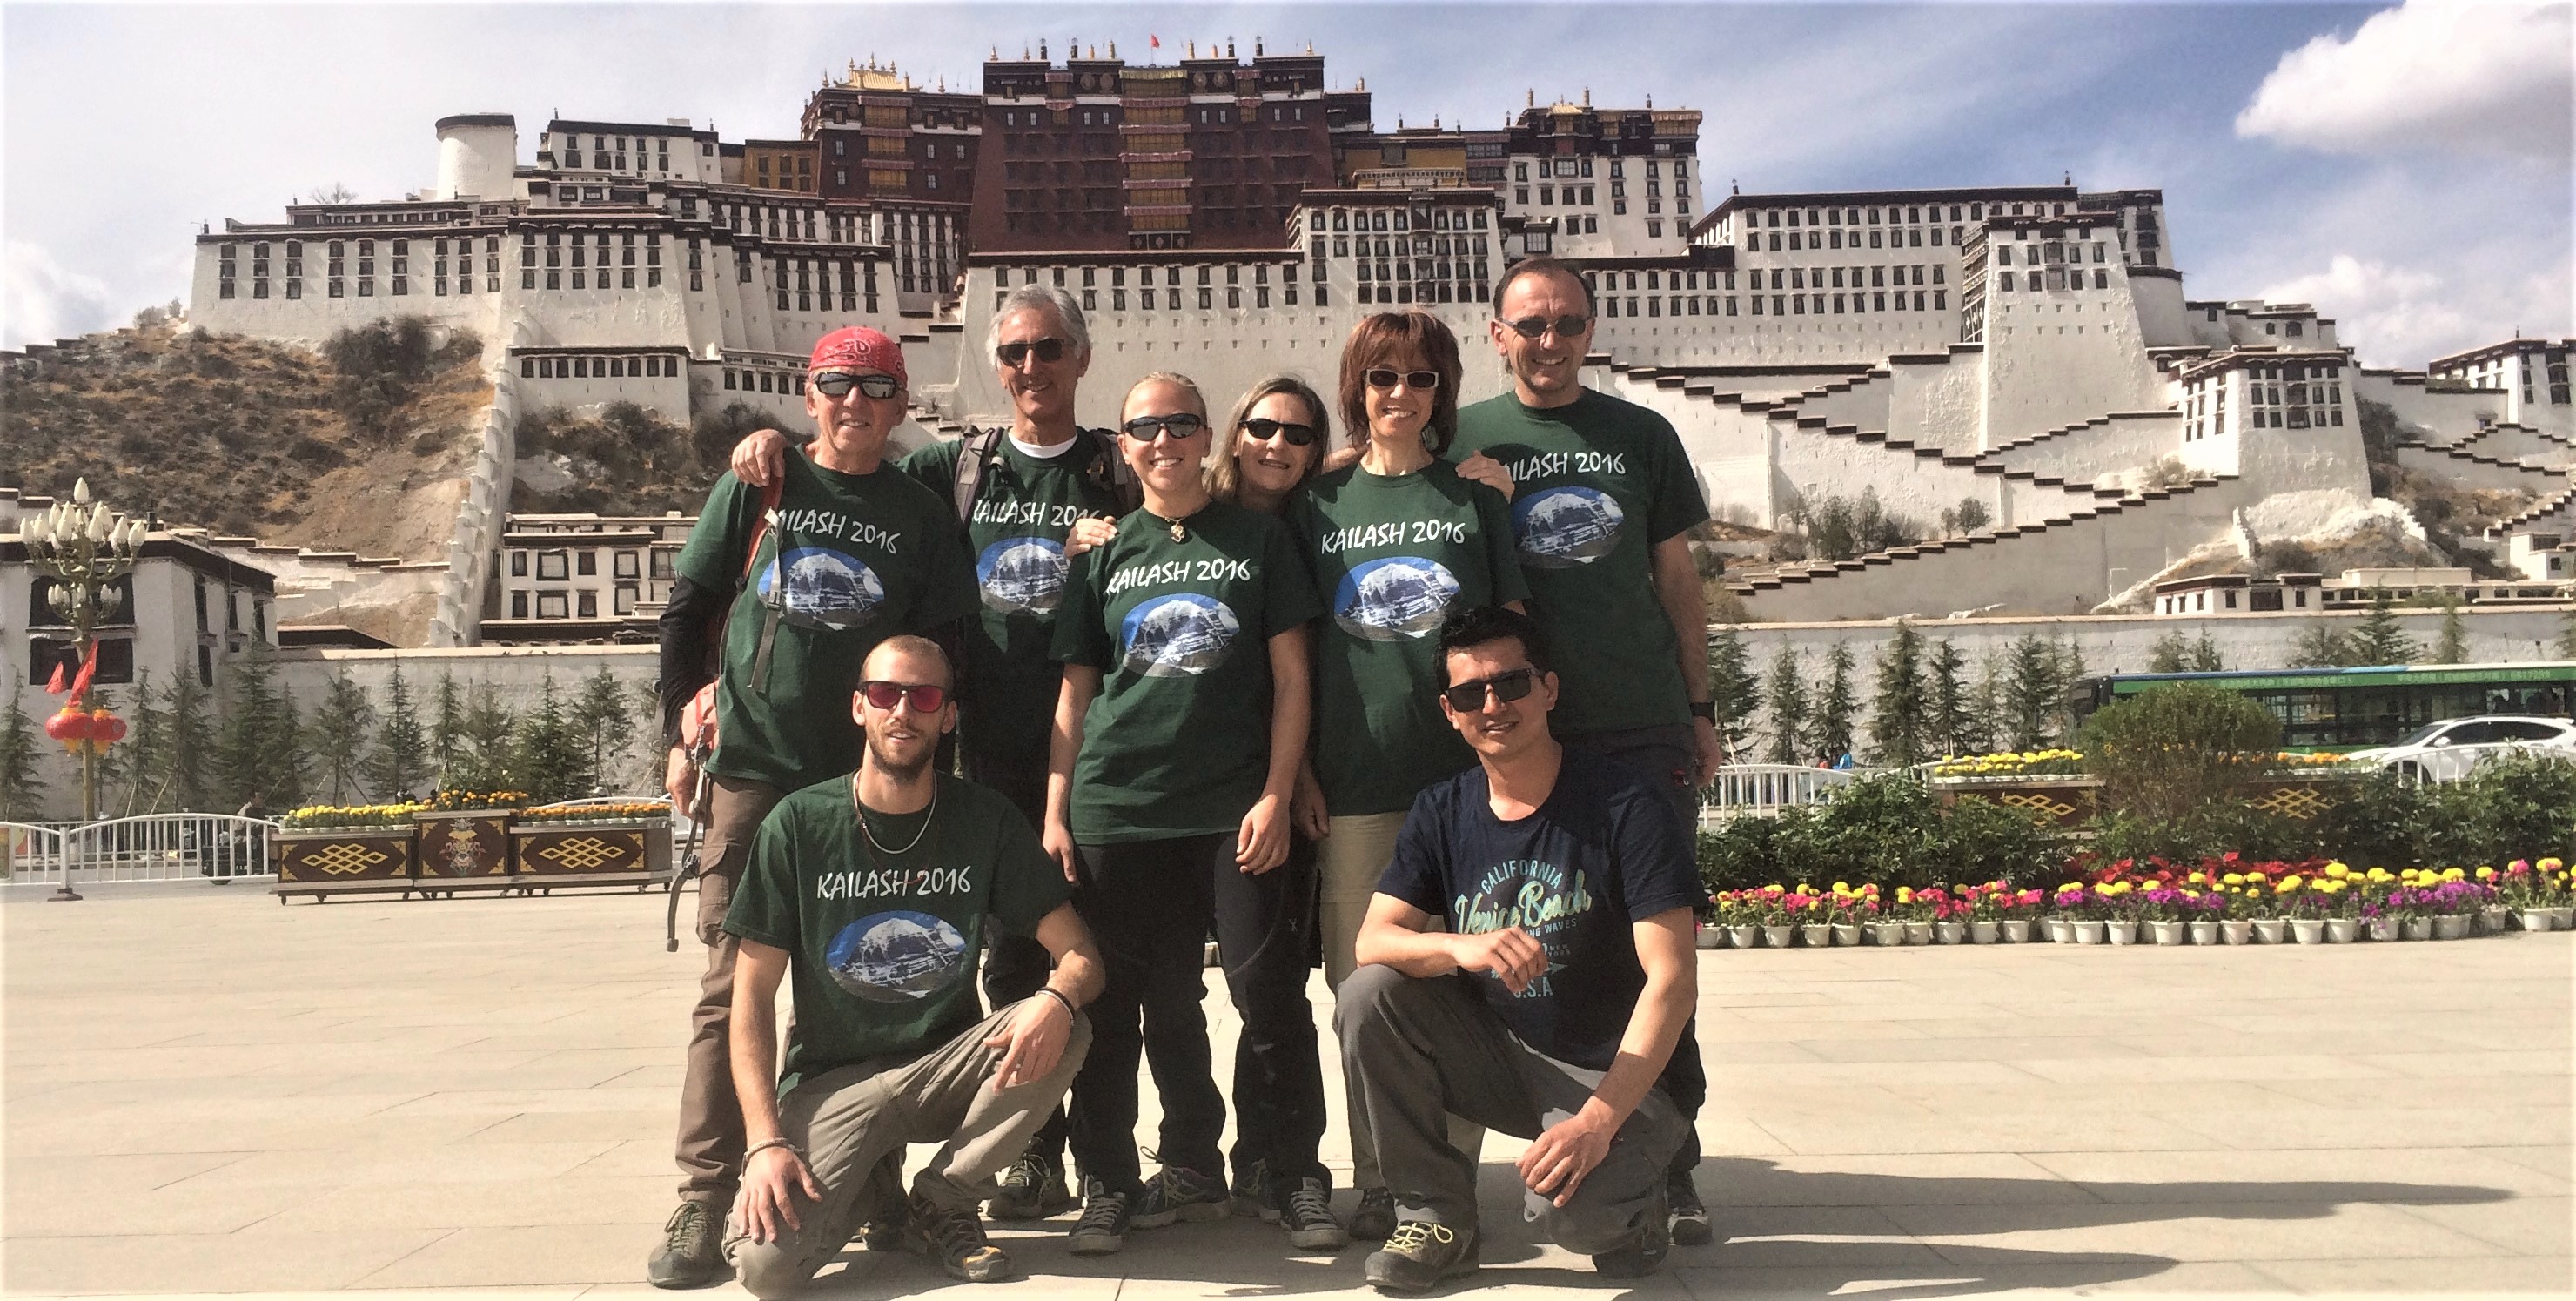 Lhasa Potala Palace visit